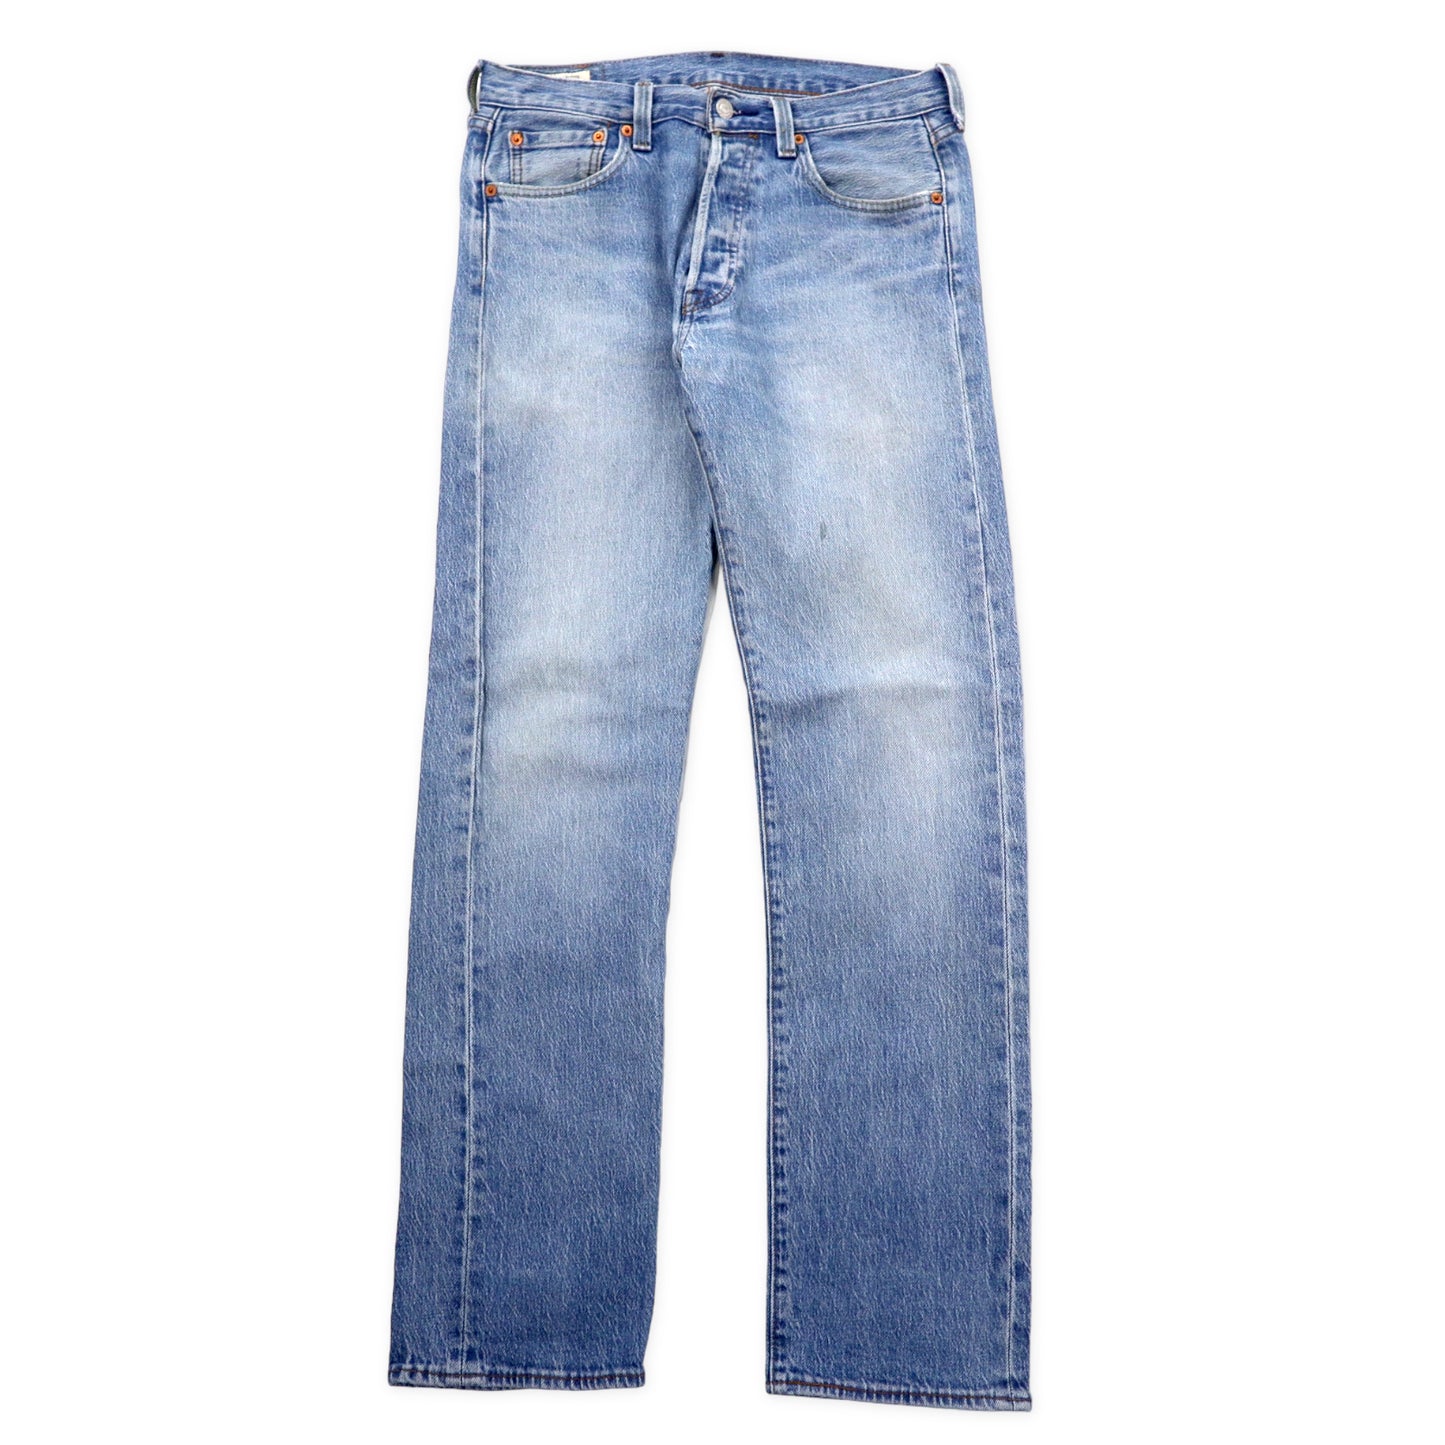 Levi's Premium 501 Big E 501 Original Fit Jeans Denim Pants 30 ...